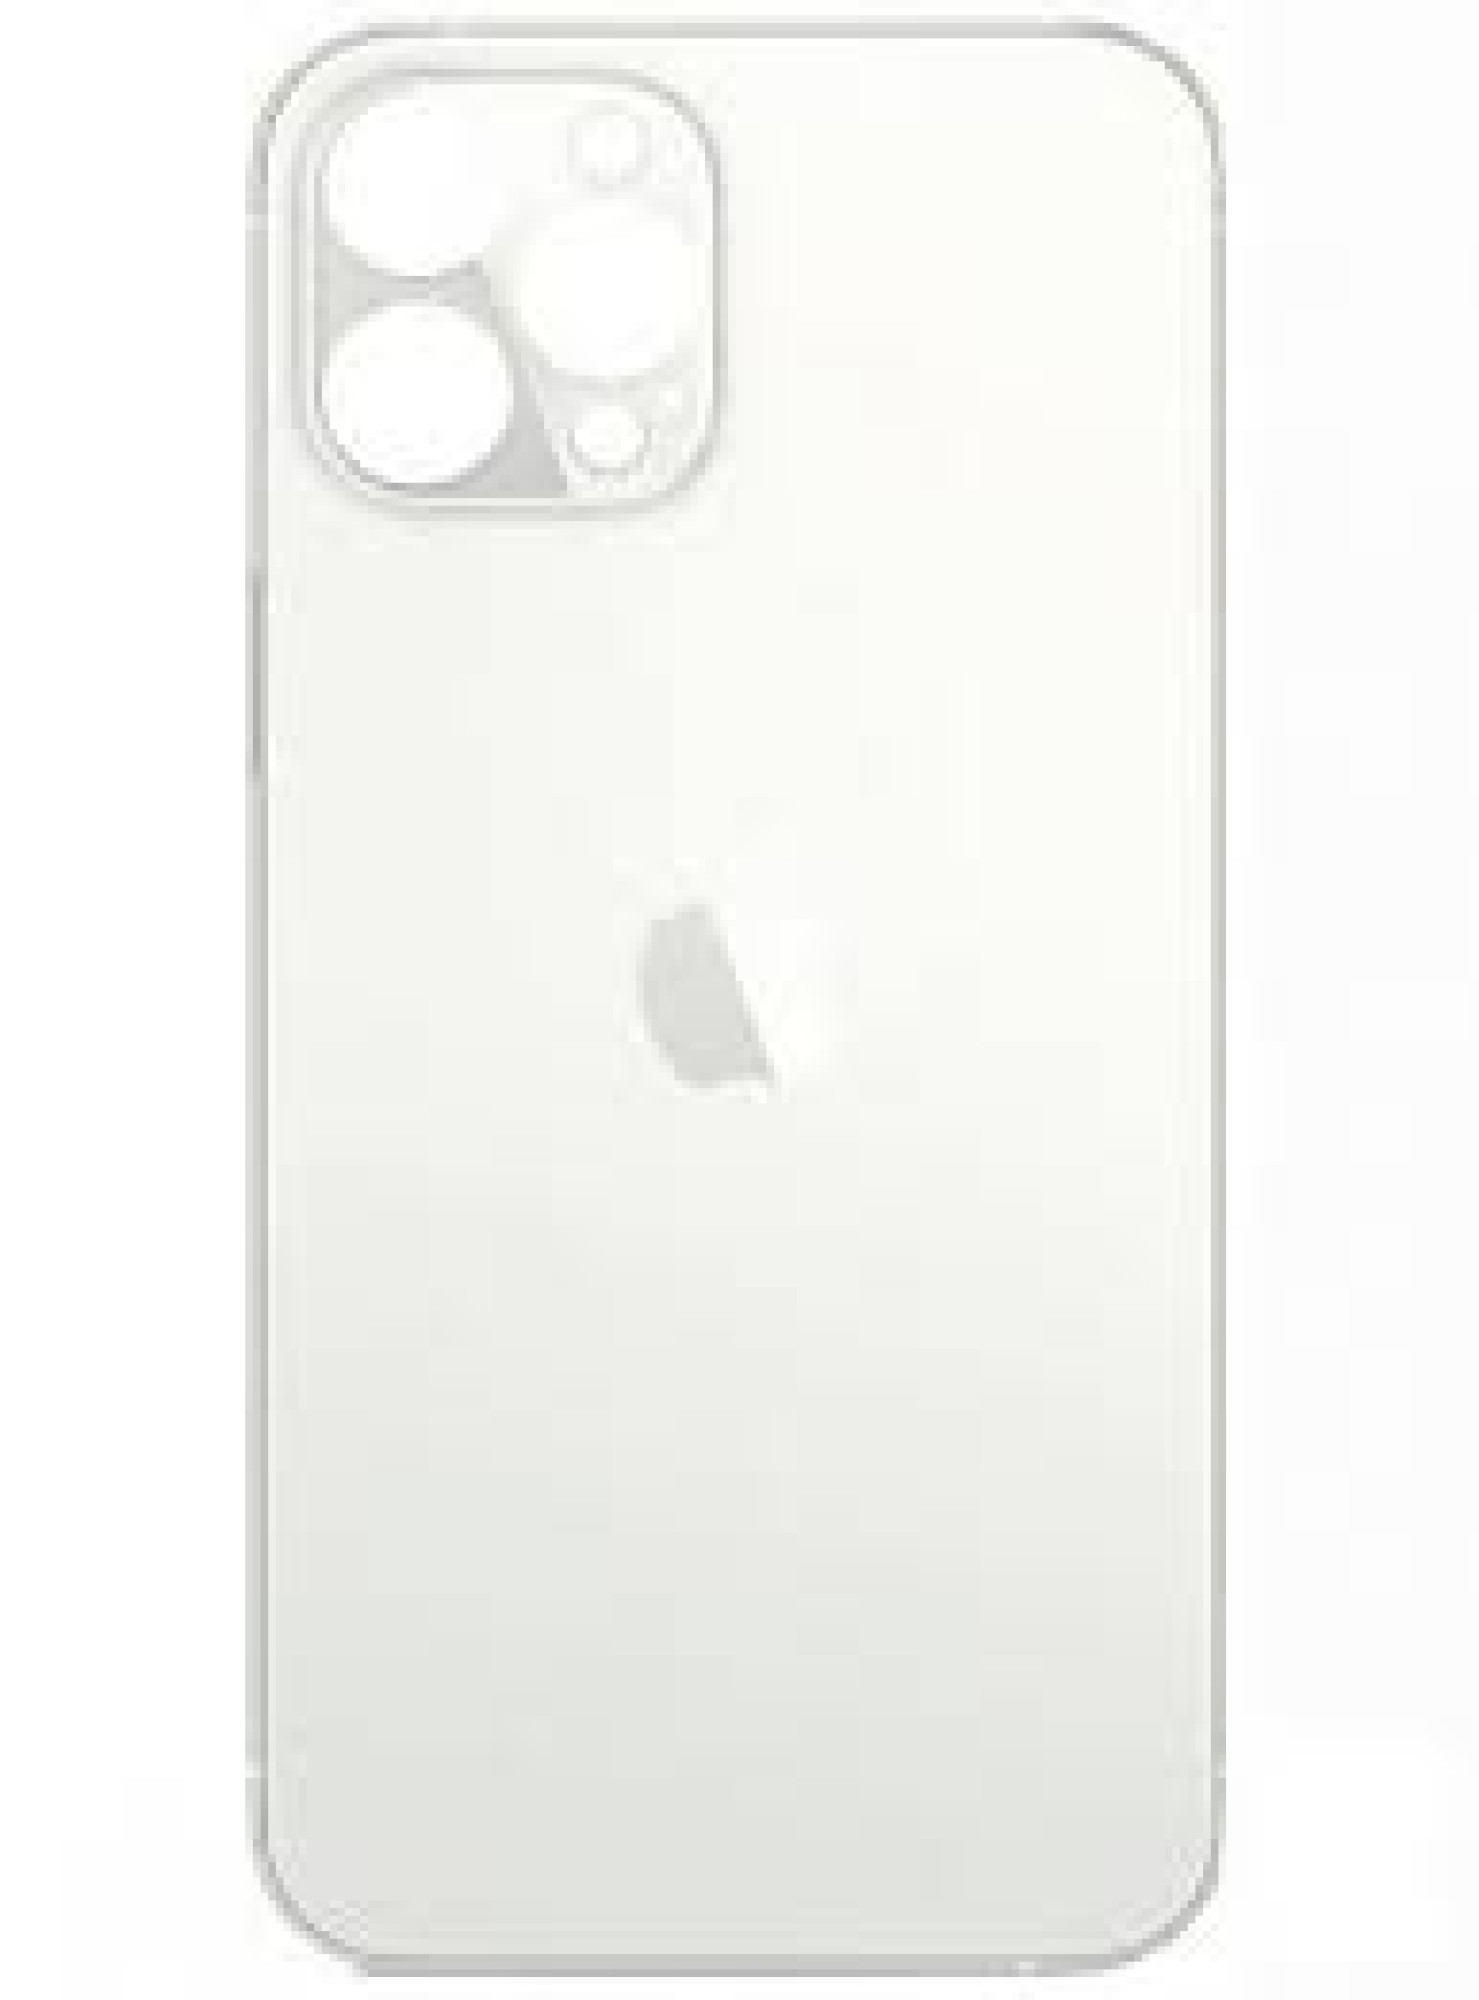 Задняя крышка для Apple iPhone 12 Pro Max (широкое отверстие под камеру), белая